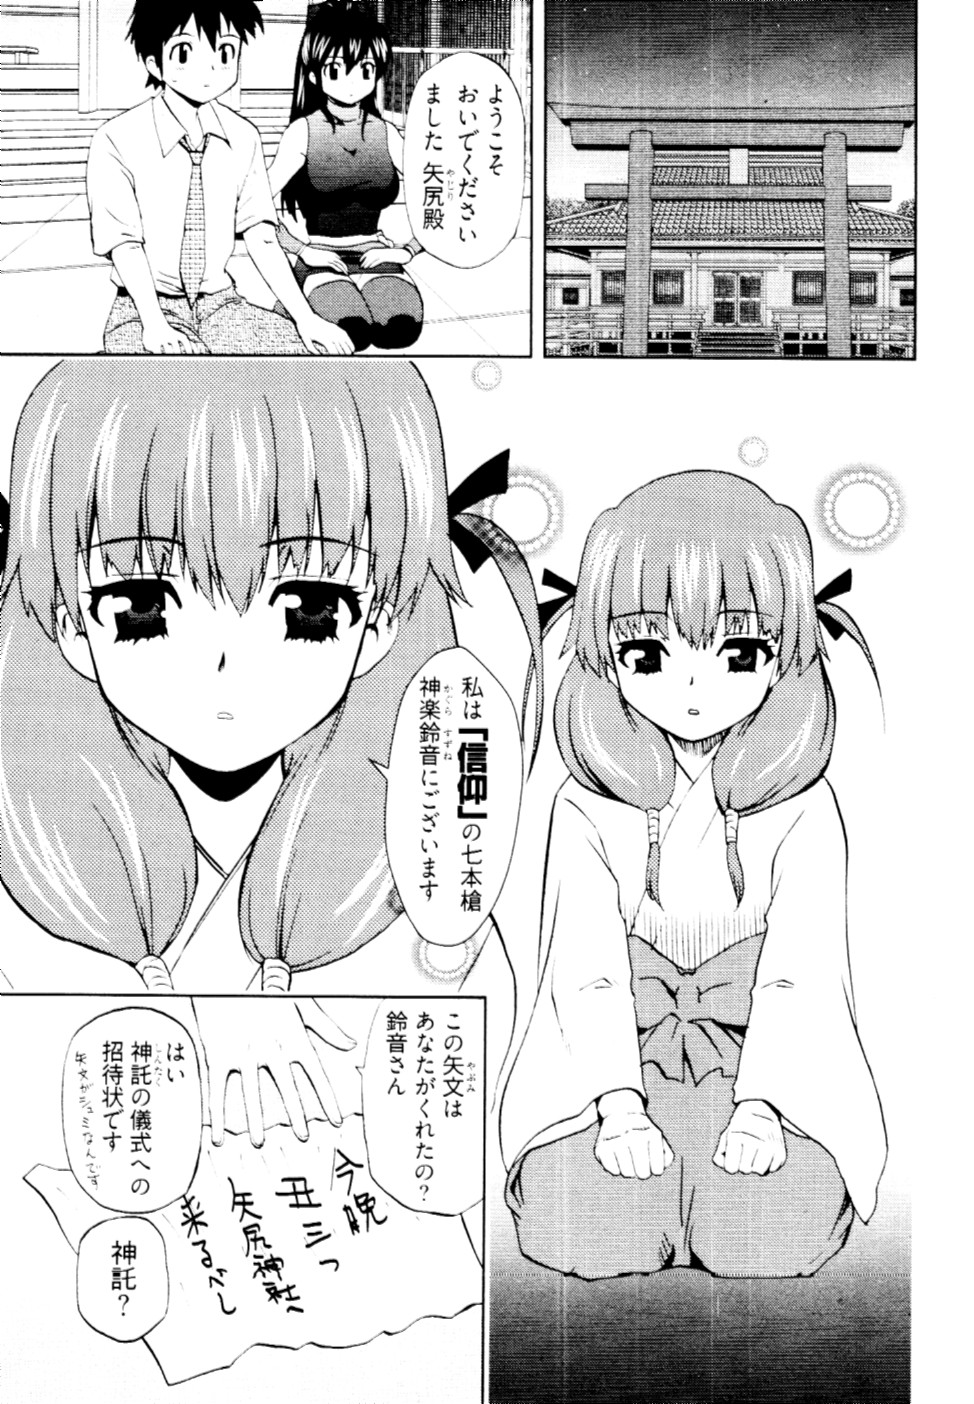 [Togami Shin] Tonosama no Nanahon yari Vol.2 page 8 full